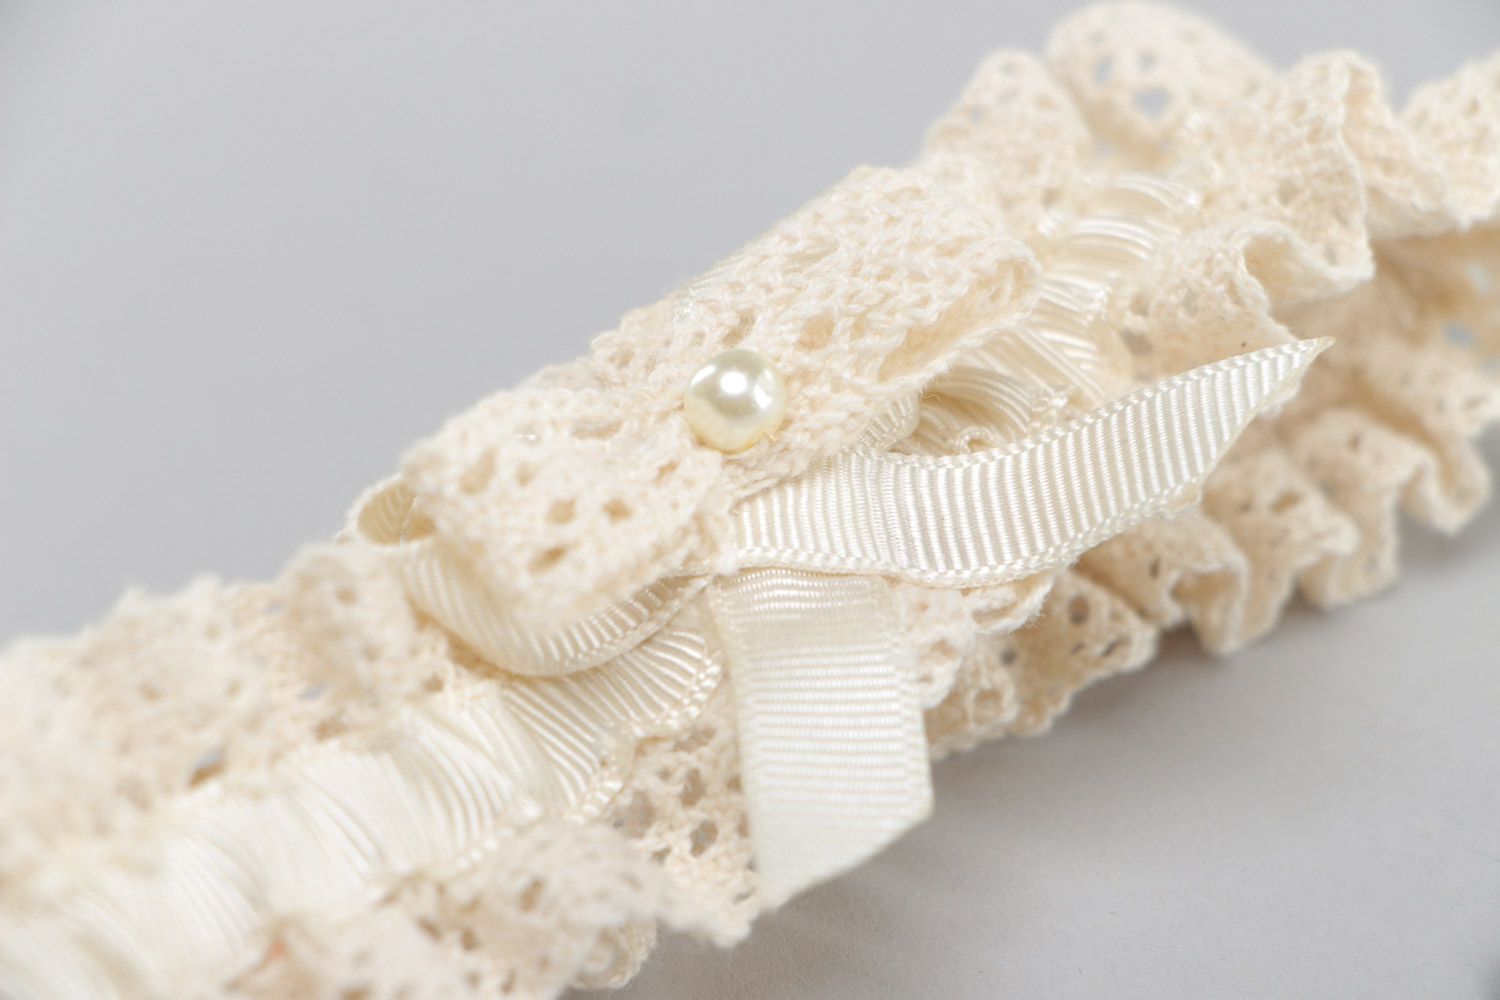 Jarretière en dentelle et ruban de reps ajourée ivoire faite main pour mariée photo 4